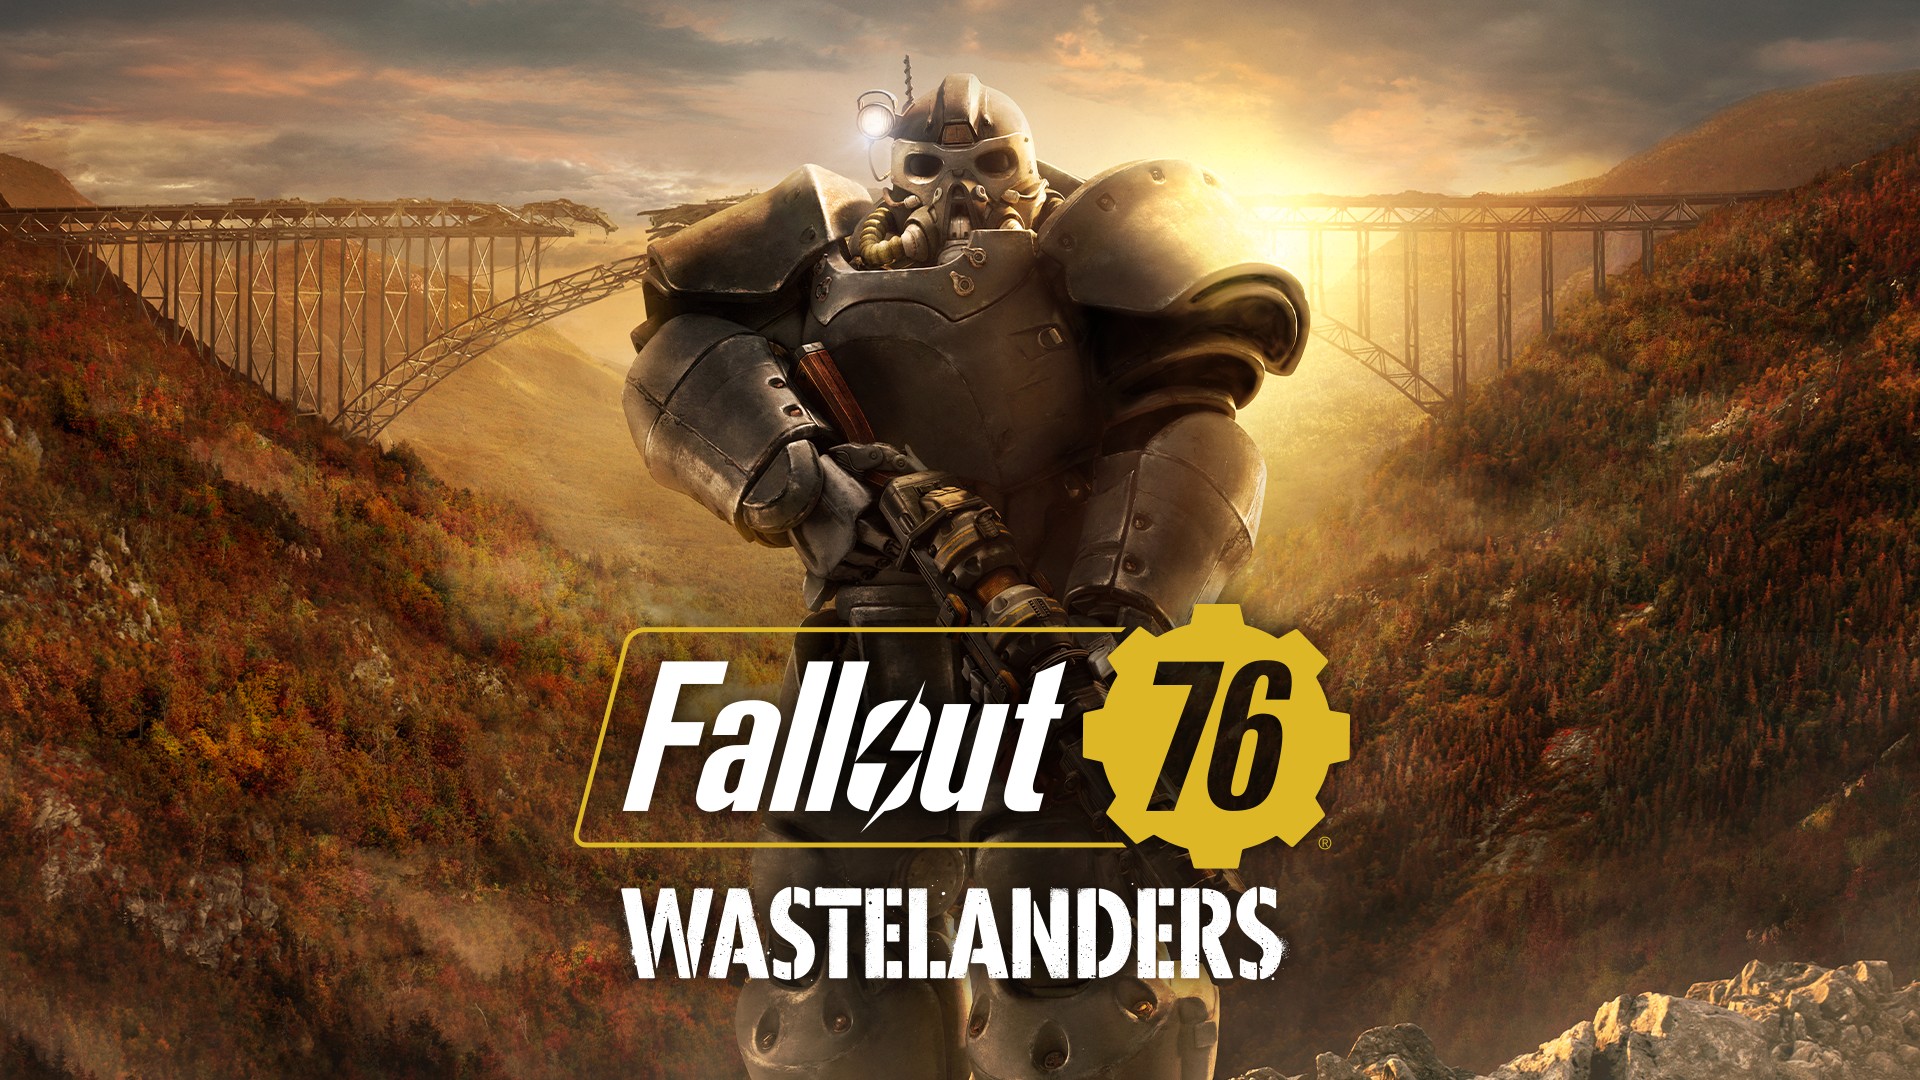 Fallout76_Wastelanders_KeyArt_1920x1080_JPG.jpg